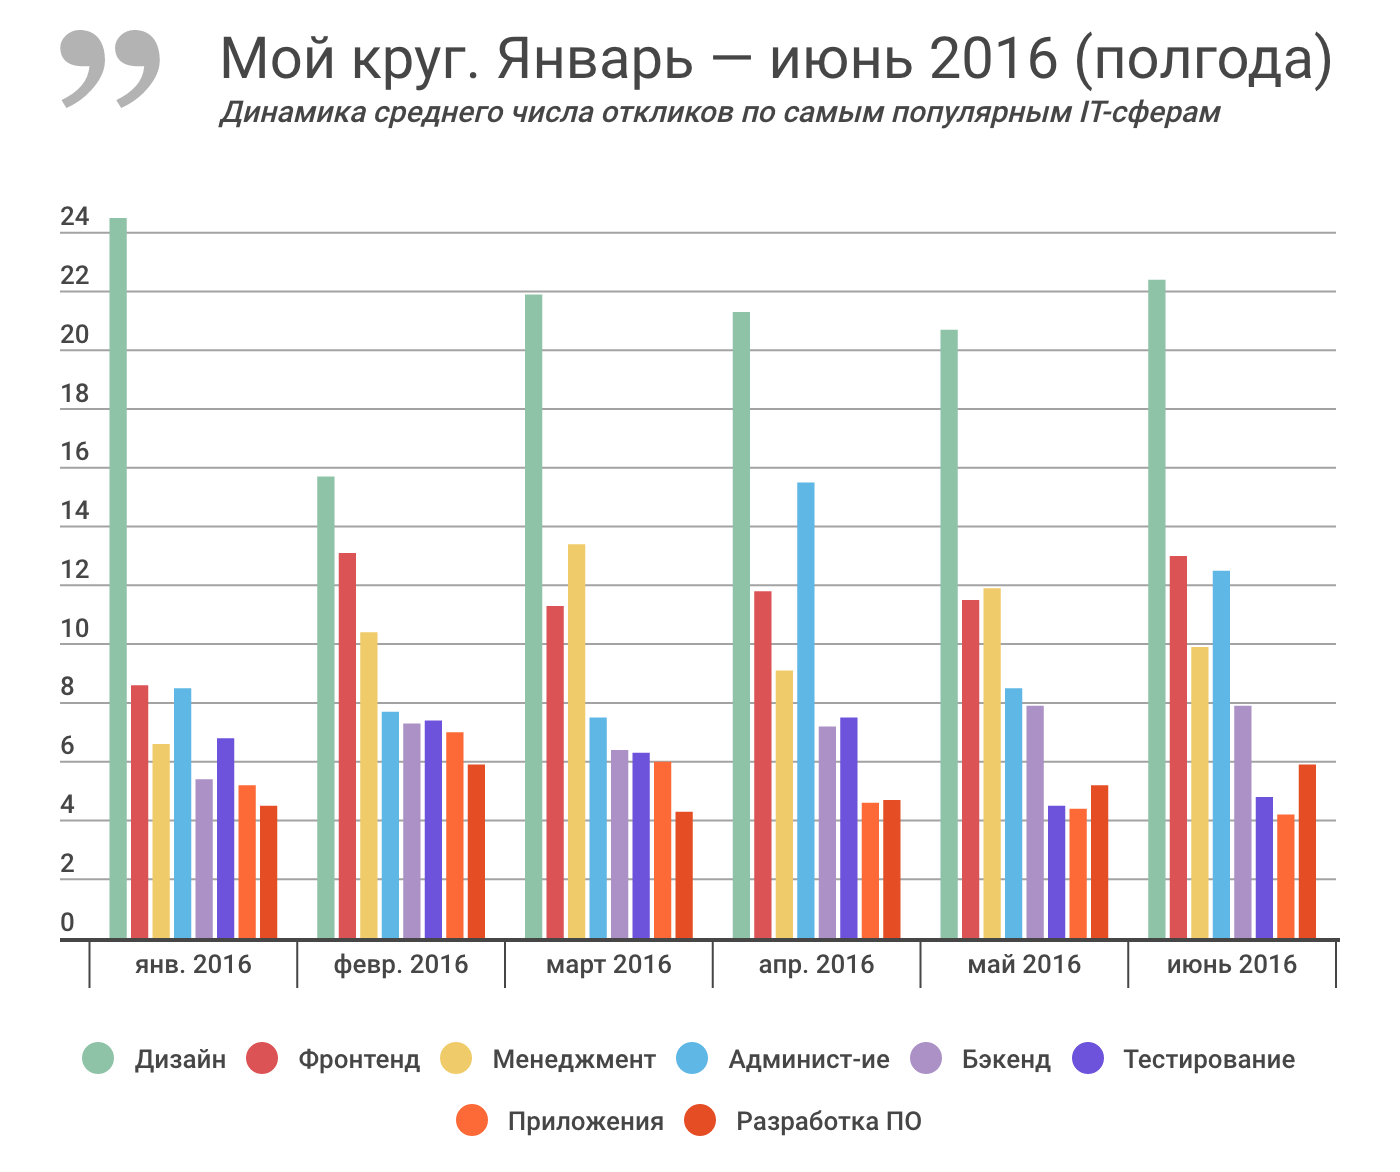 Отчет о результатах «Моего круга» за июнь 2016, и самые популярные вакансии месяца - 2